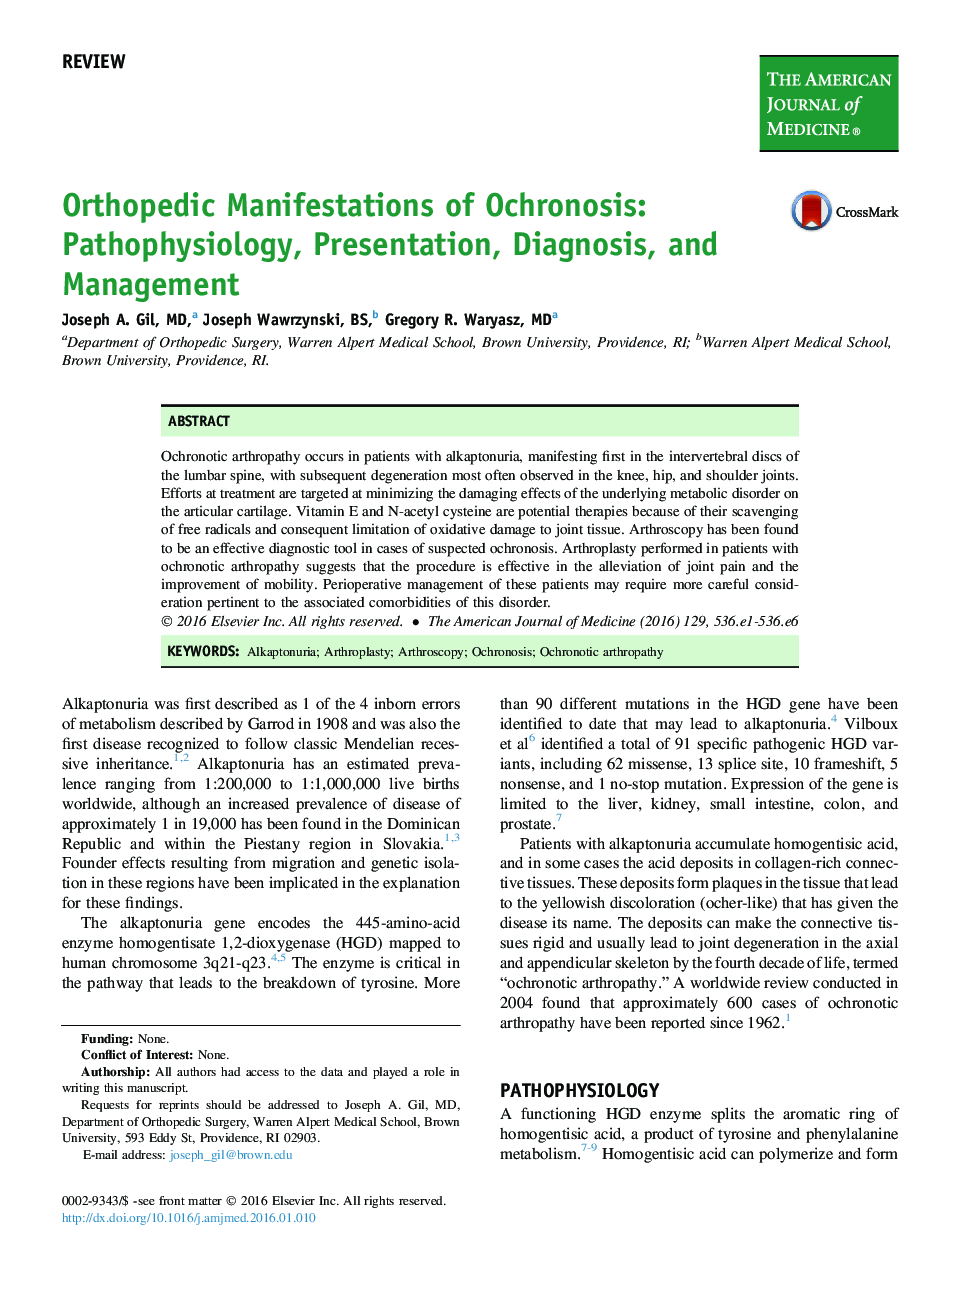 Orthopedic Manifestations of Ochronosis: Pathophysiology, Presentation, Diagnosis, and Management